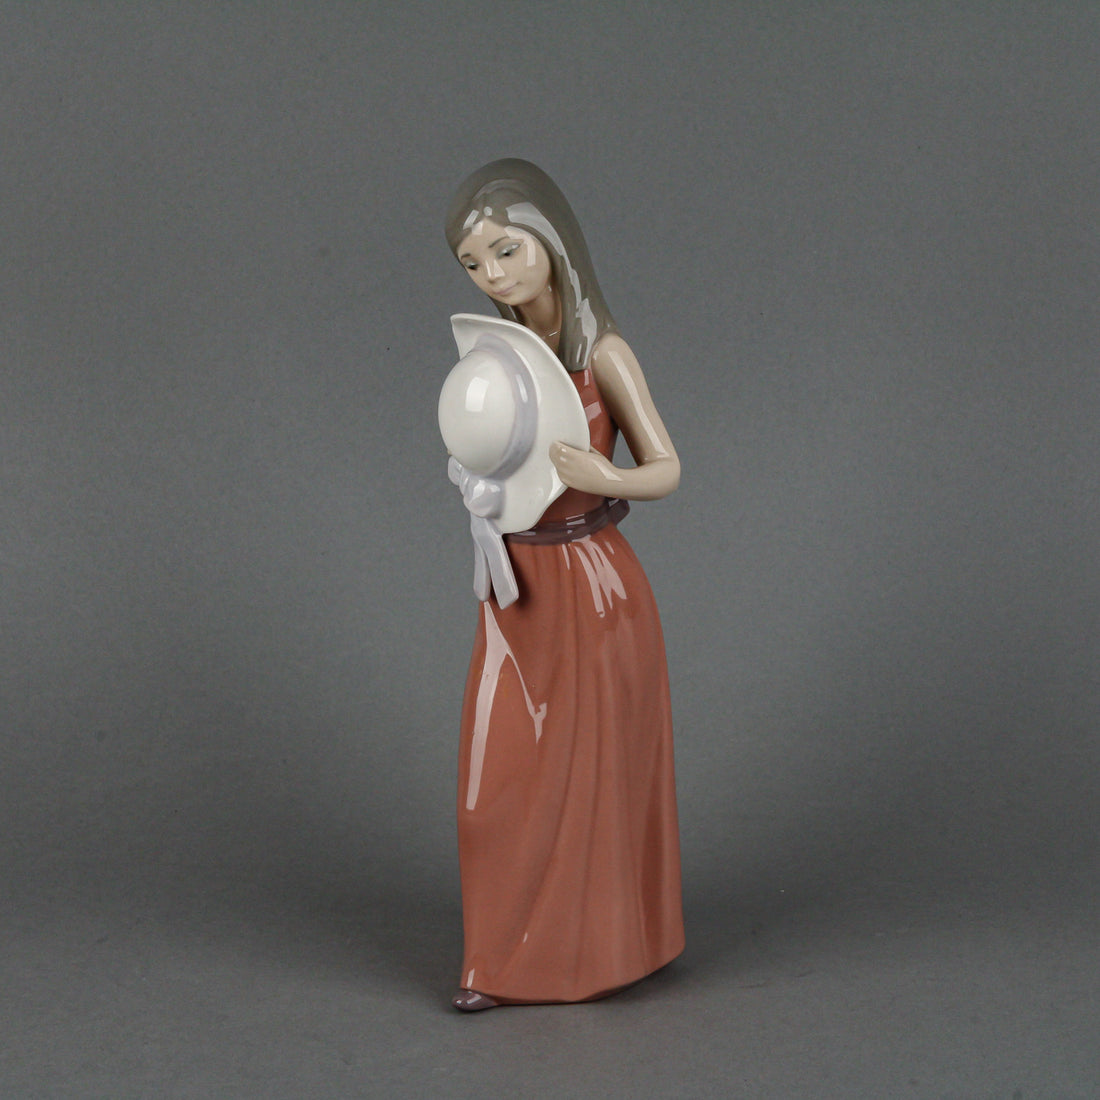 LLADRO Bashful Girl with Straw Hat 5007 Figurine H10"